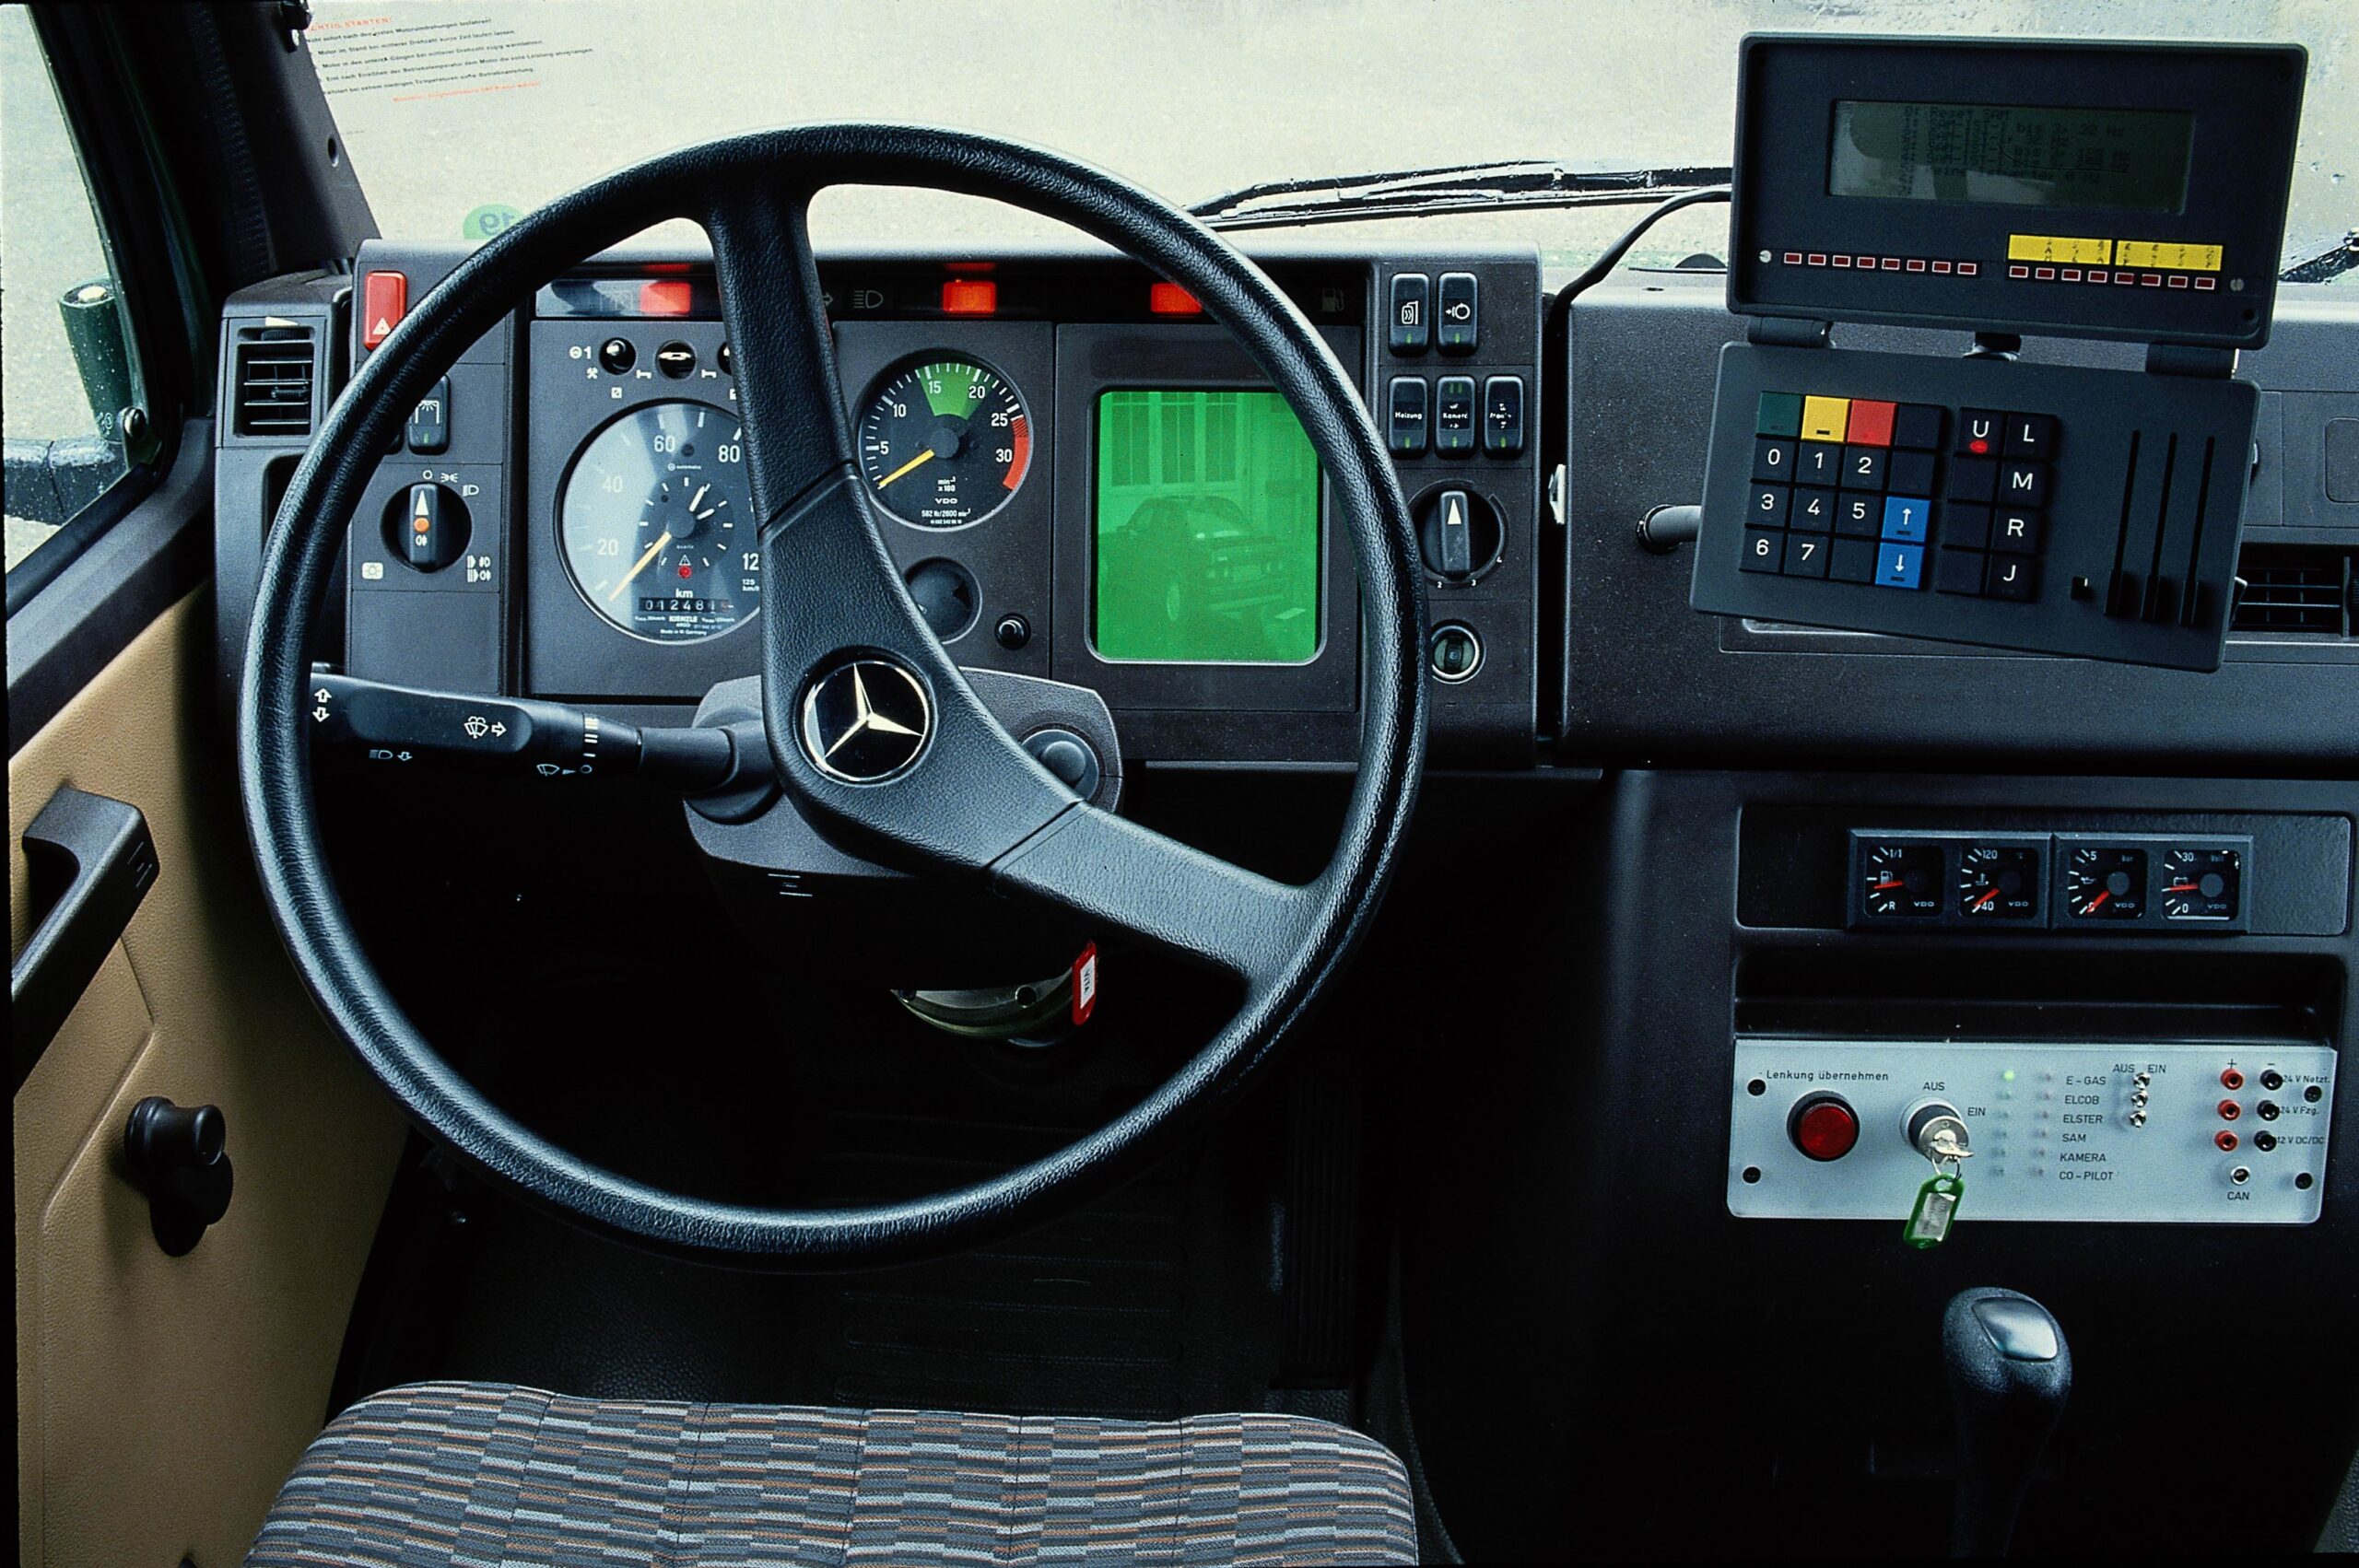 Projekt PROMETHEUS von 1986 als Vorreiter des autonomen Fahrens